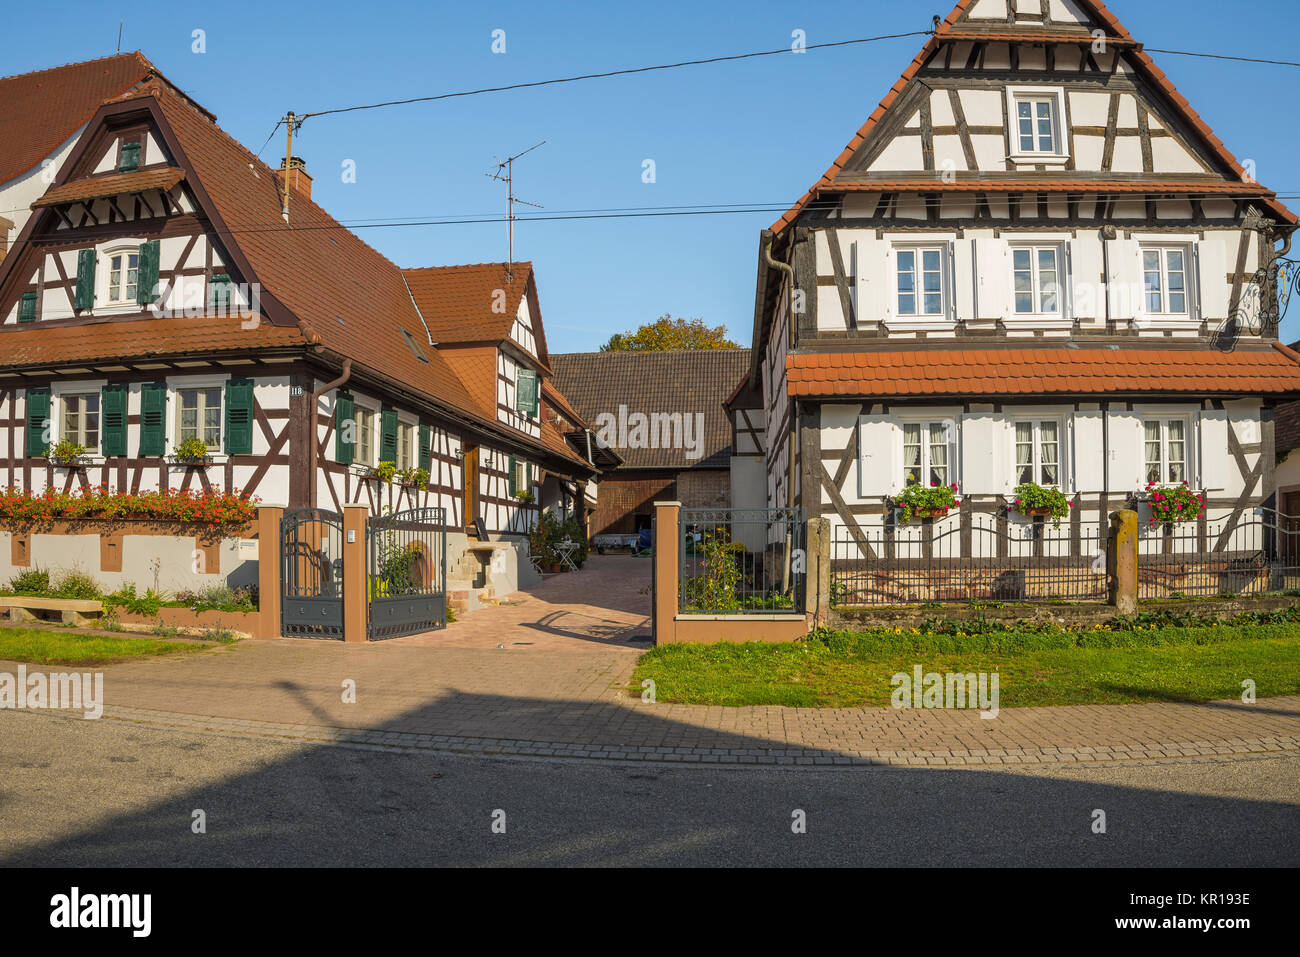 Casas con entramados de madera con decoración floral, Seebach, pequeña aldea en la región de Alsacia, Francia, miembro de la asociación de los pueblos más bellos de Francia Foto de stock